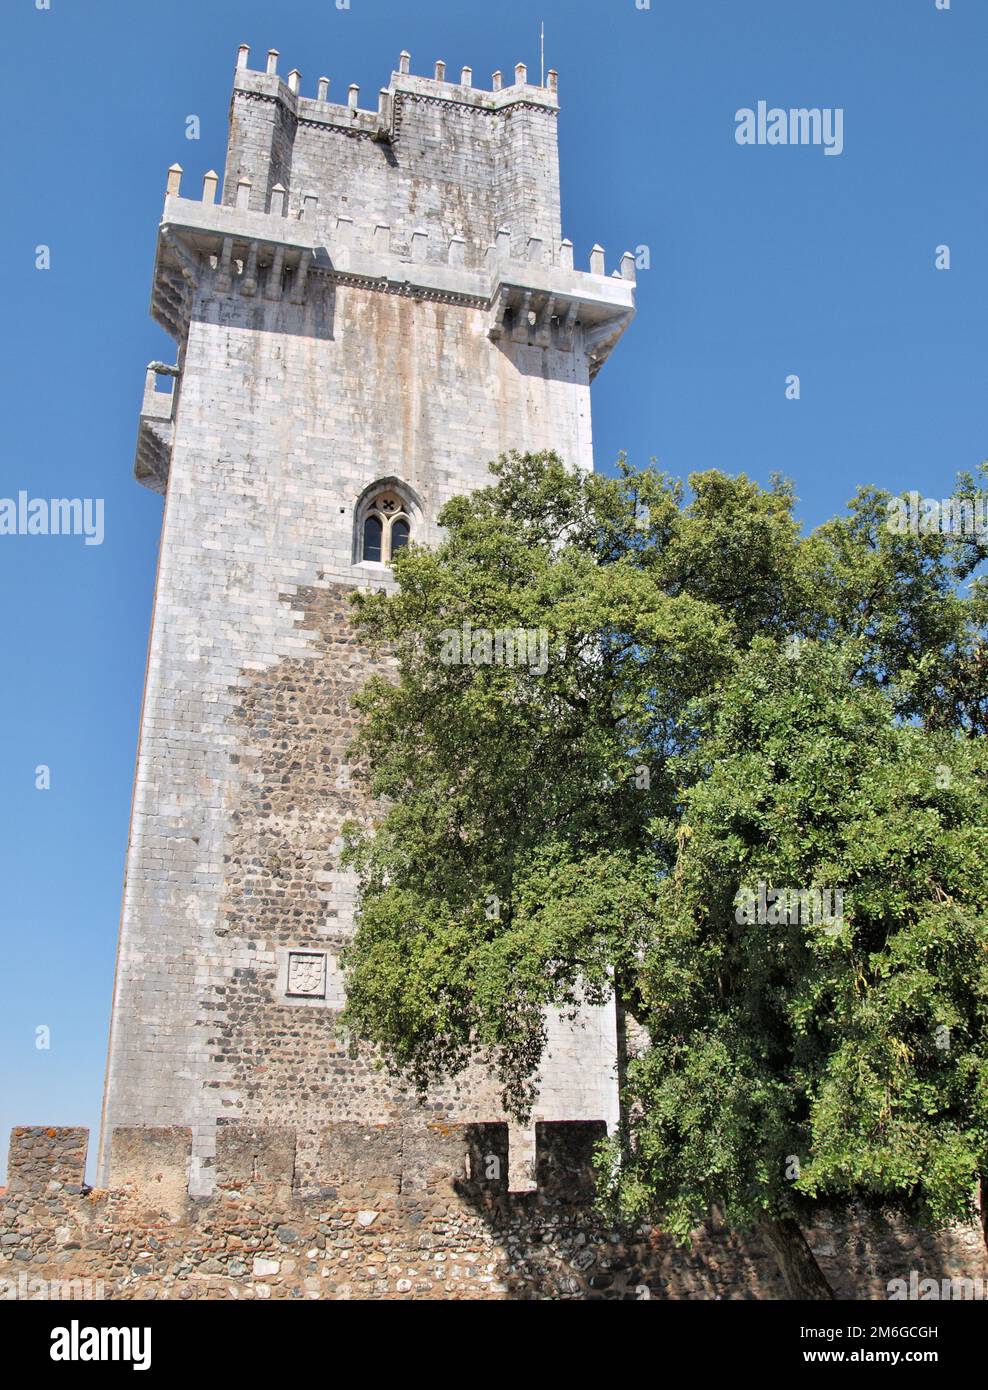 Historic castle tower in Beja, Alentejo - Portugal Stock Photo